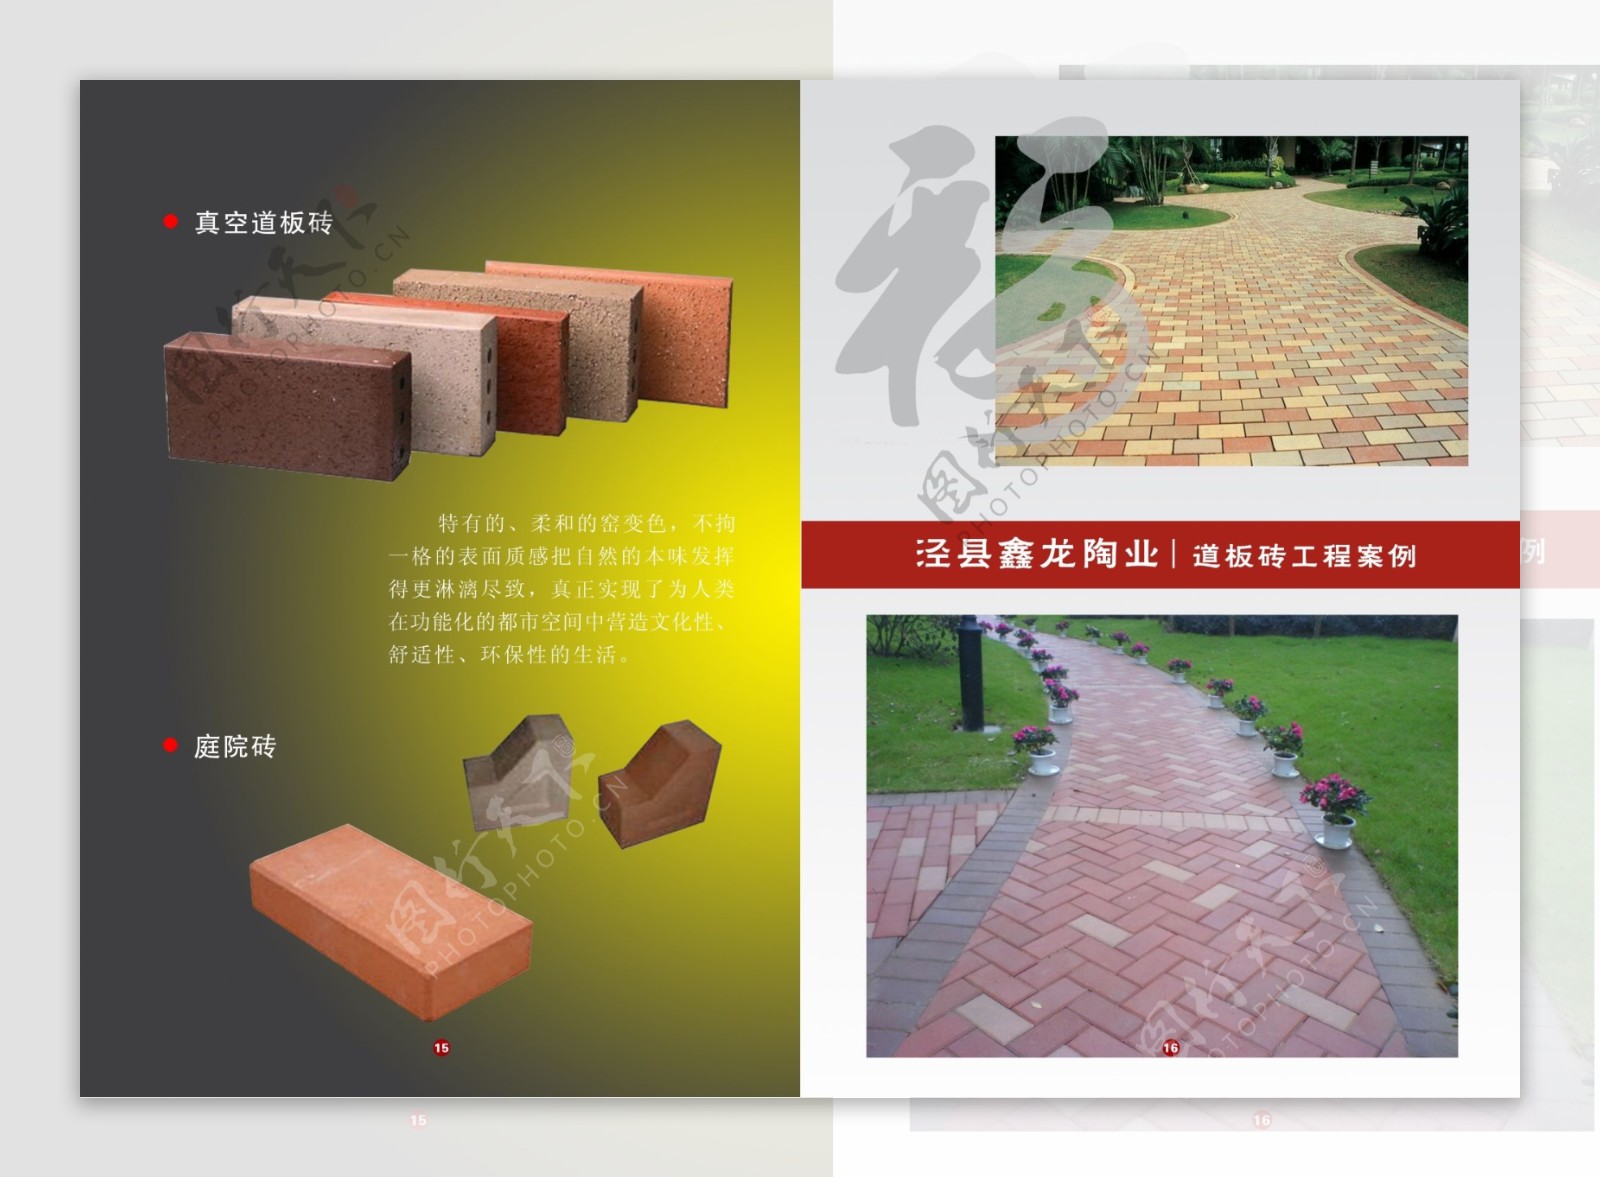 道板砖工程案例图片